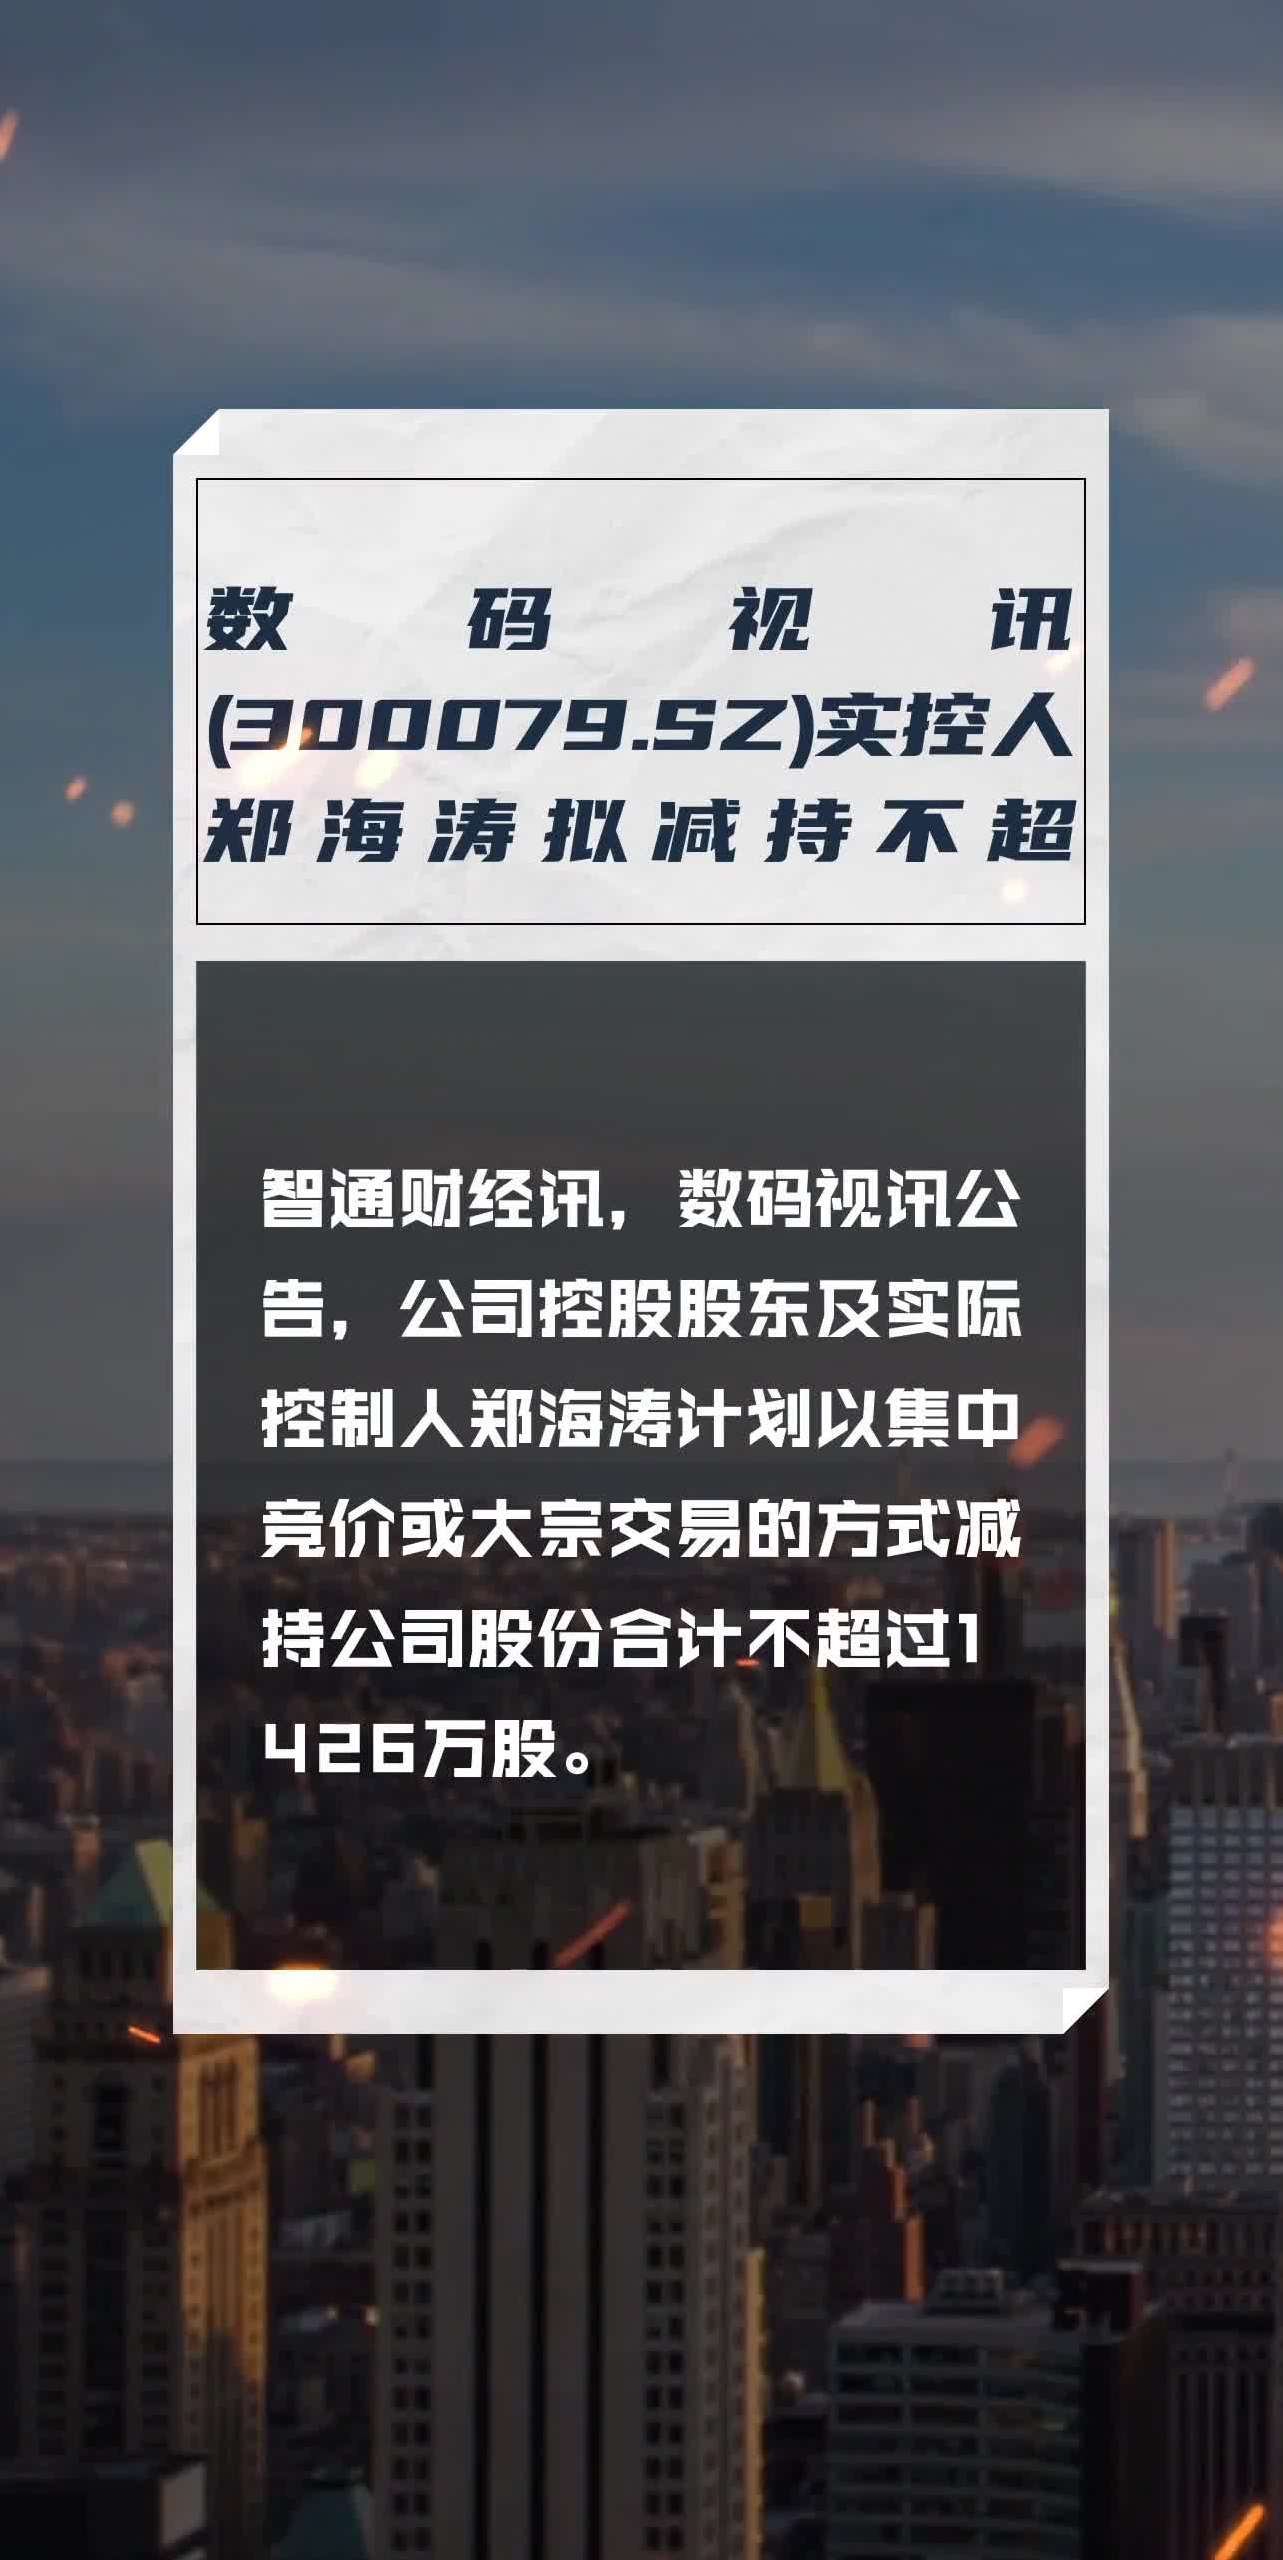 数码视讯(300079sz)实控人郑海涛拟减持不超1426万股